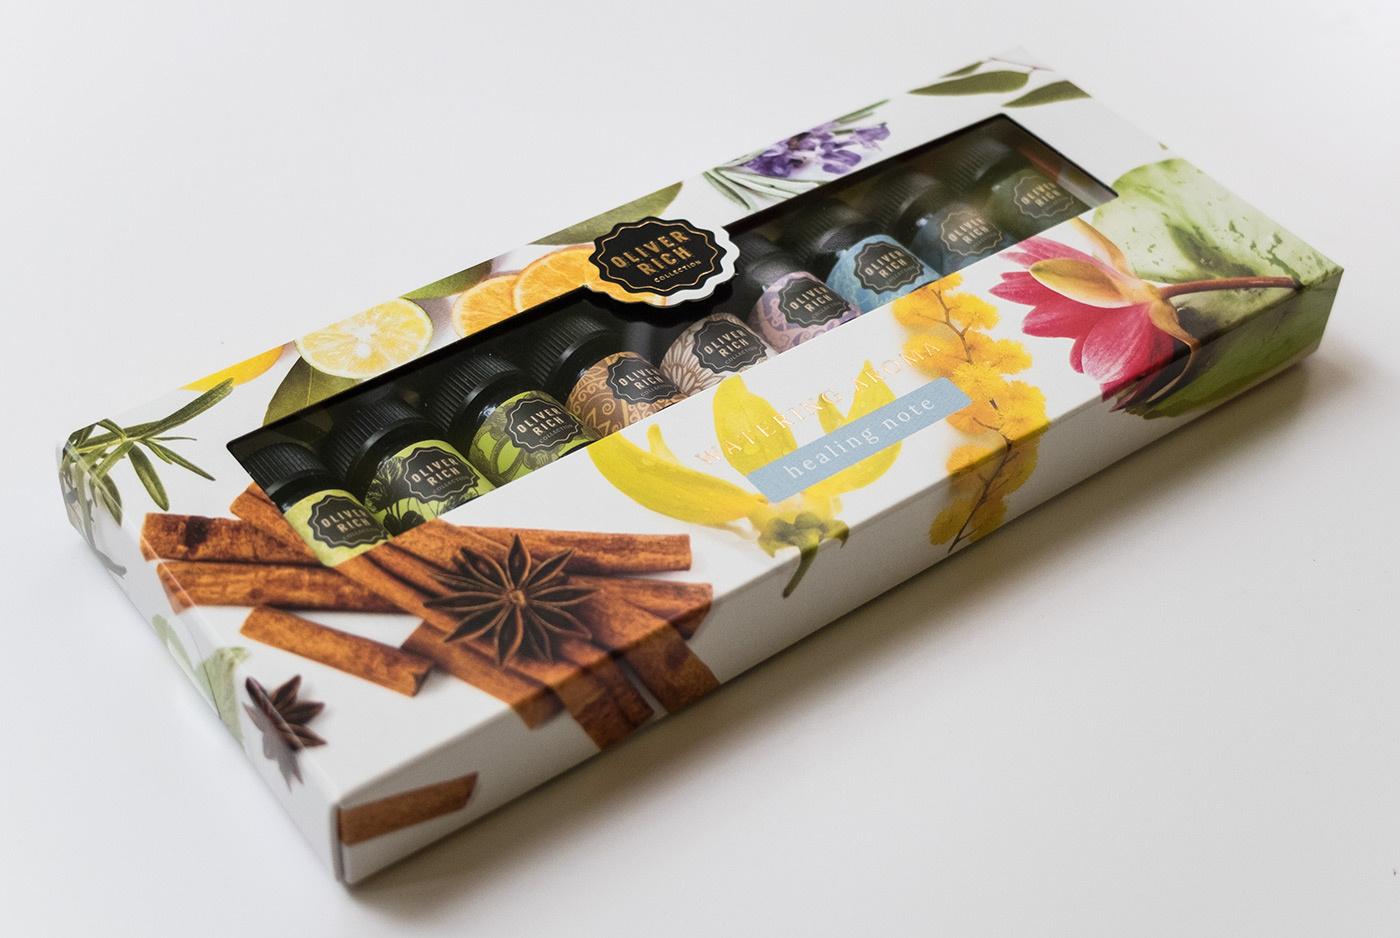 Oliver Richミニアロマの「ヒーリングノート」セットの箱のデザイン